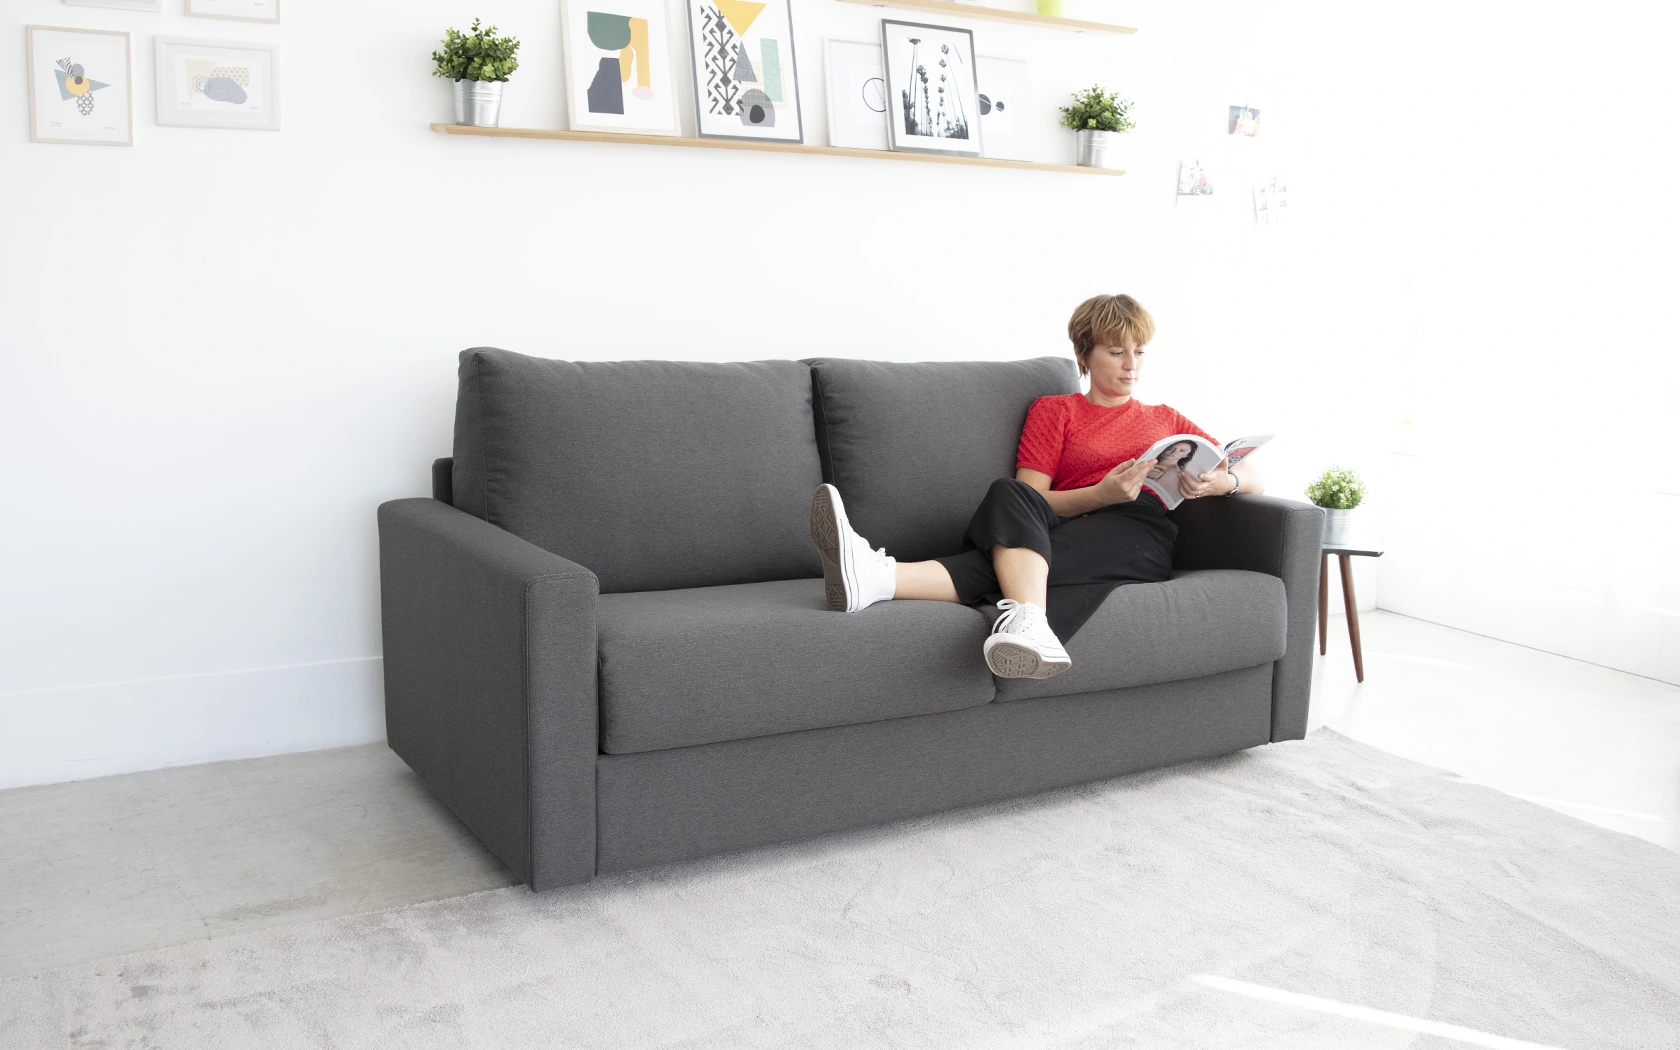 Sofás cama - Calidad y comodidad - IKEA